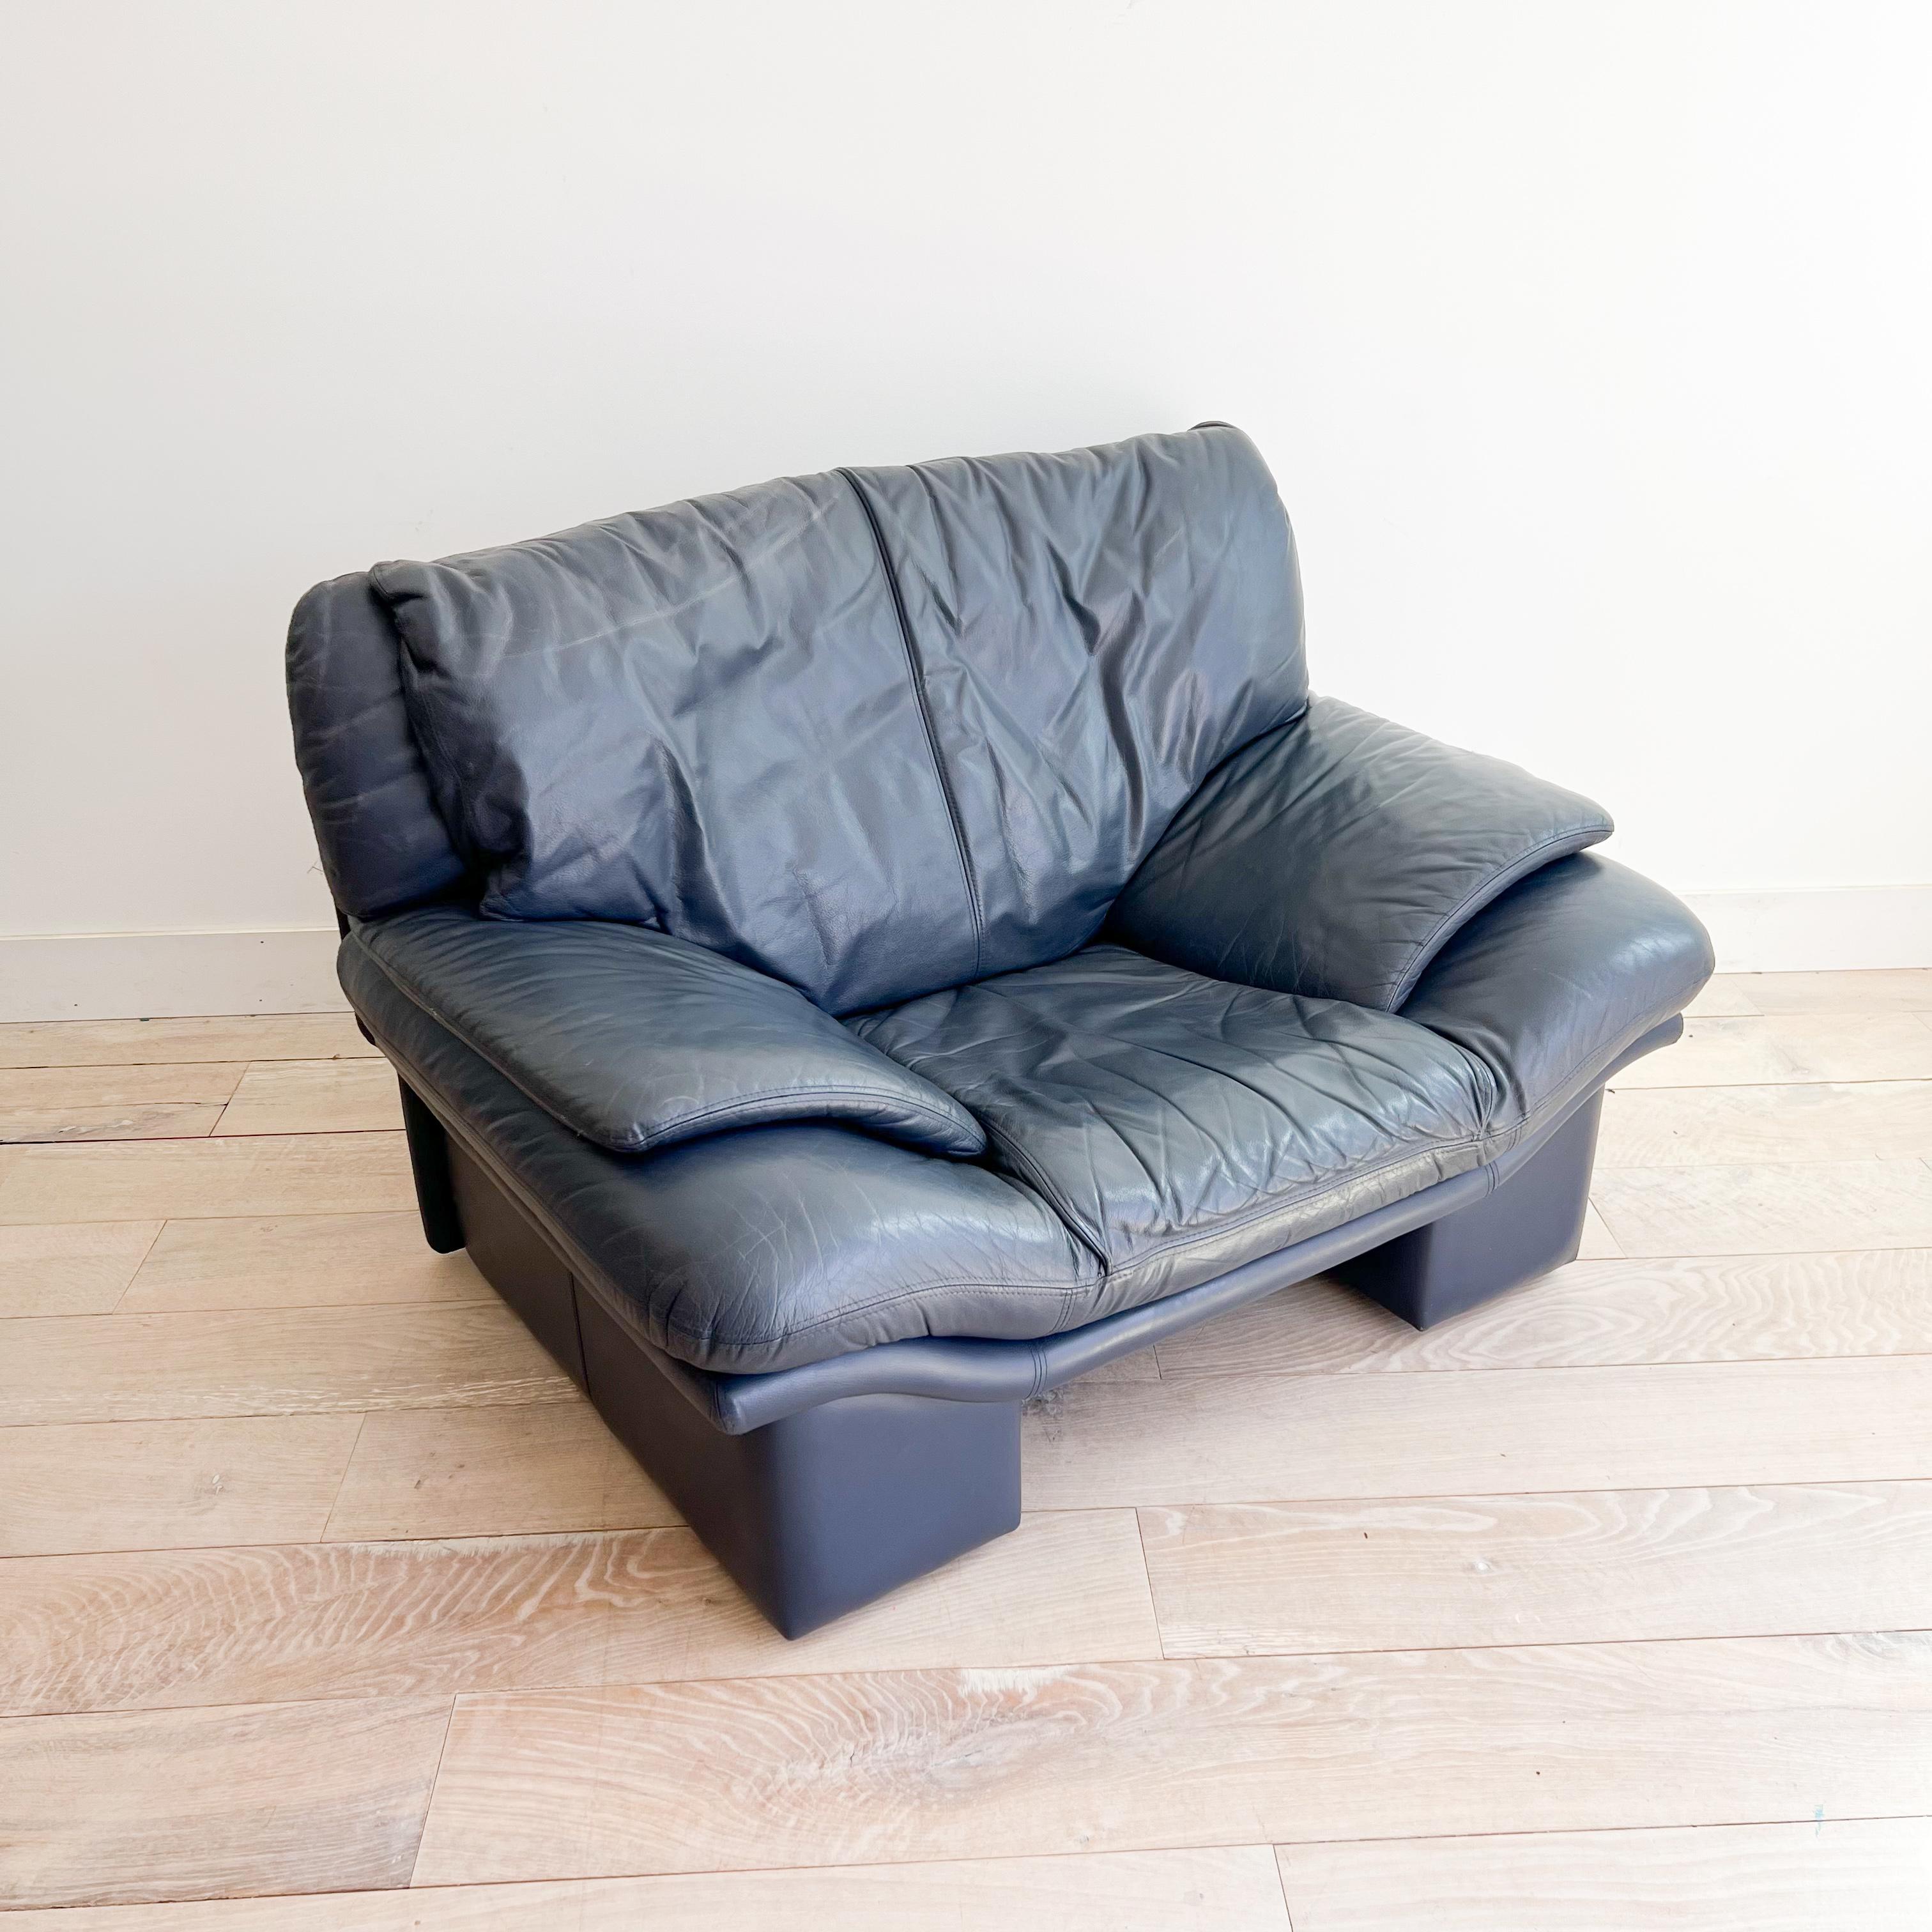 Voici l'incarnation du style et du confort : la chaise Postmoderne en cuir bleu peau de requin de Nicoletti Salotti. Cette pièce extrêmement confortable, dotée d'un cuir impeccable qui ne présente que des signes minimes d'âge ou d'utilisation, vous